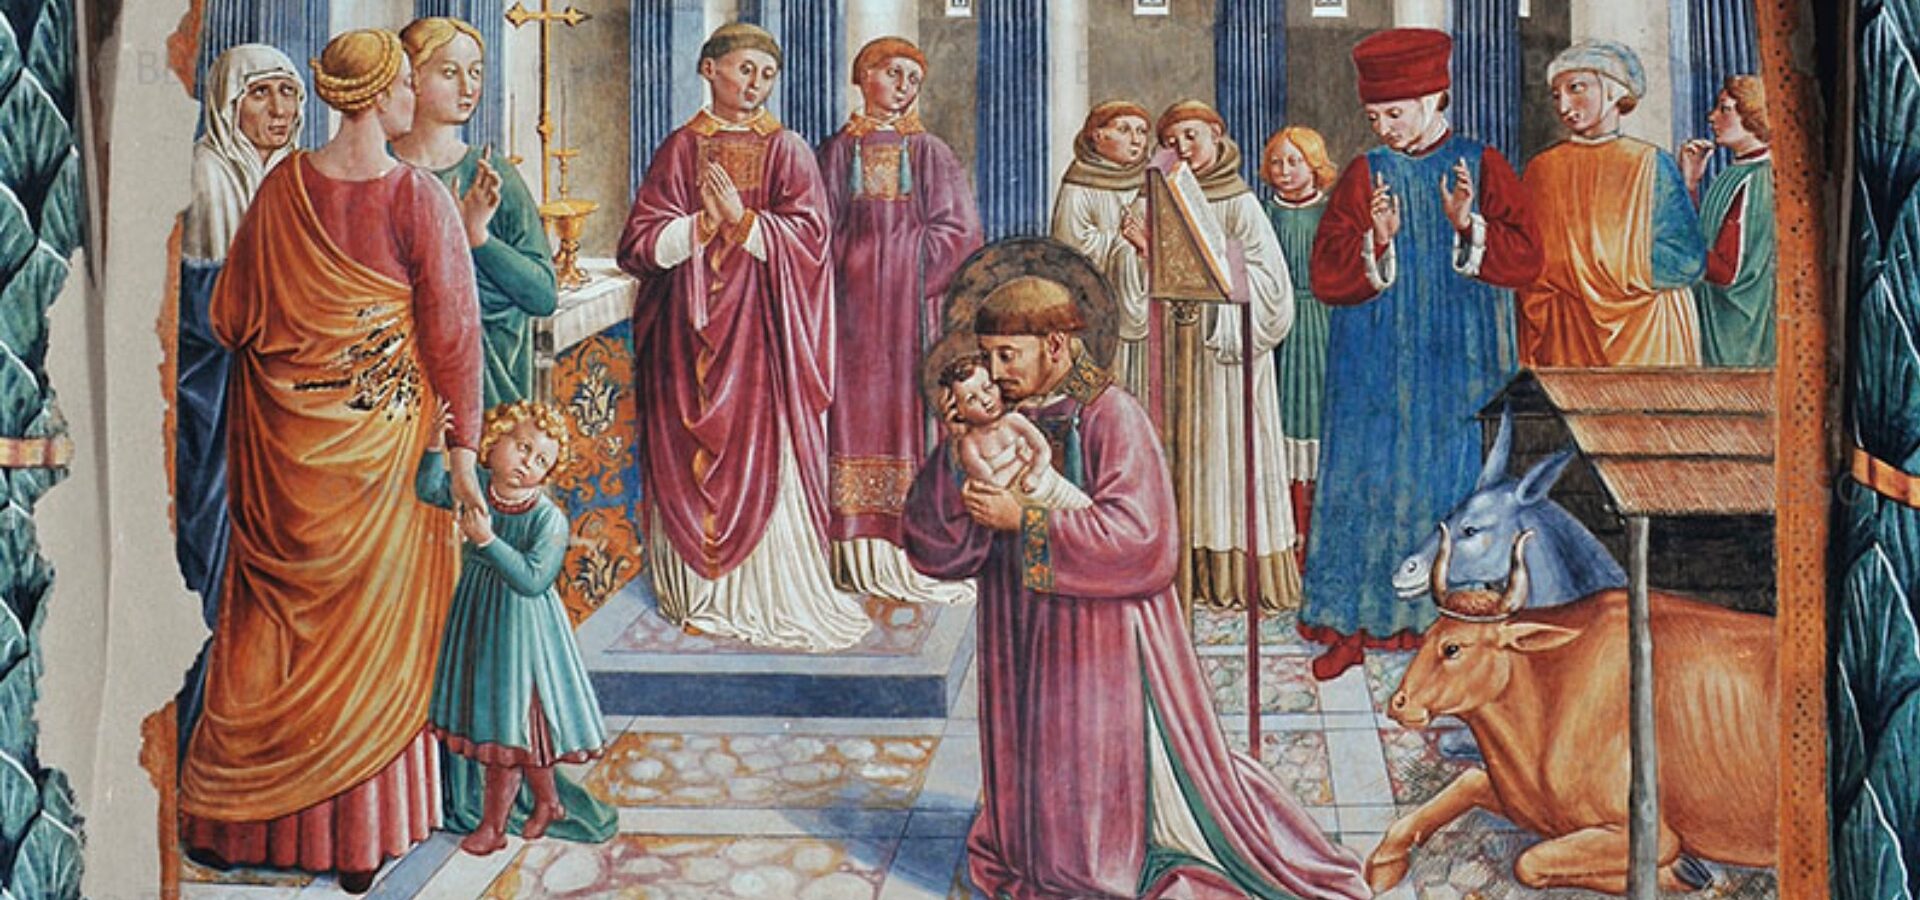 Anno 1223, da Greccio ad Agropoli la rievocazione storica del presepe di San Francesco